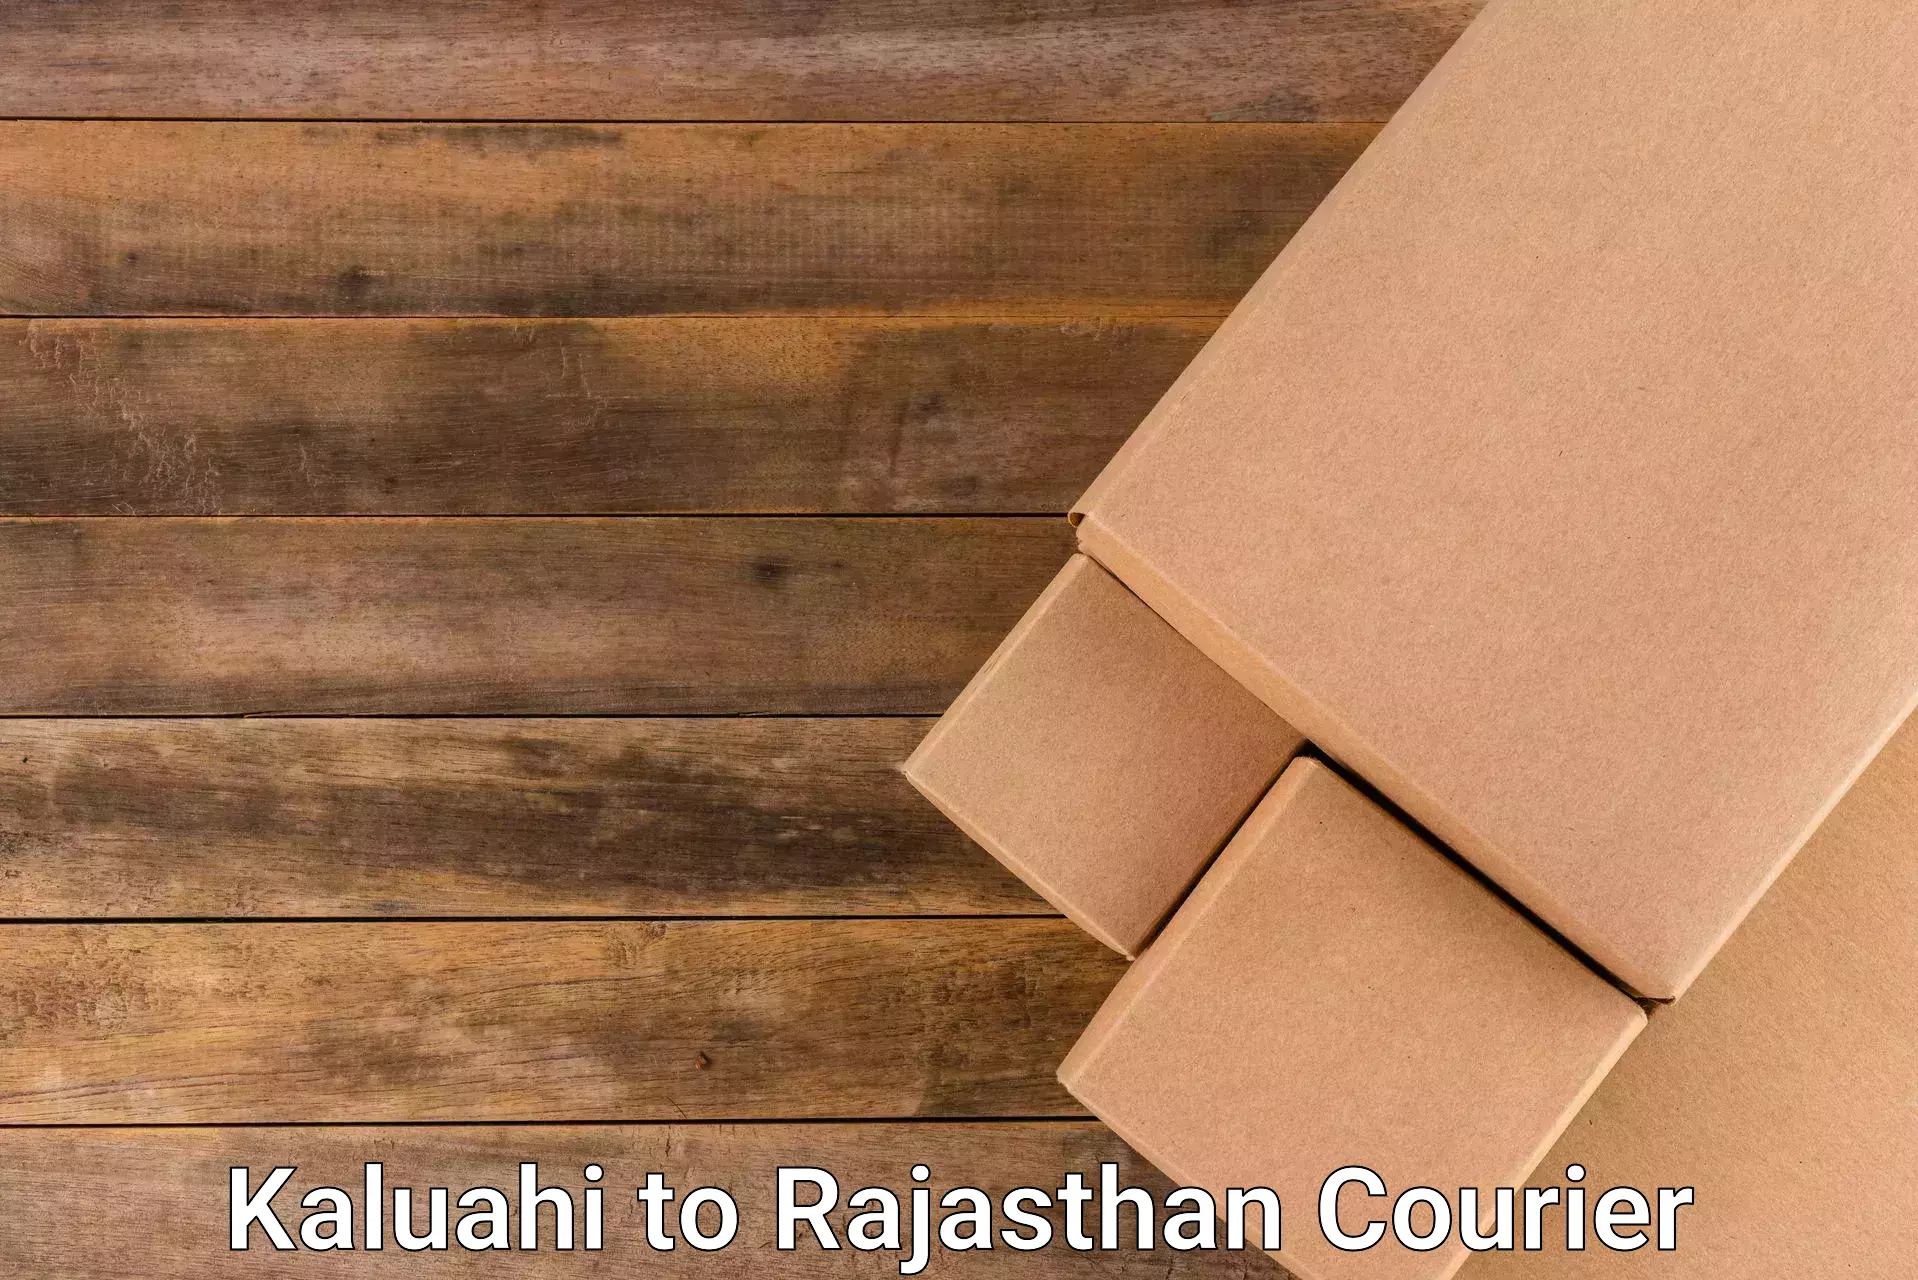 Express package handling Kaluahi to Lakheri